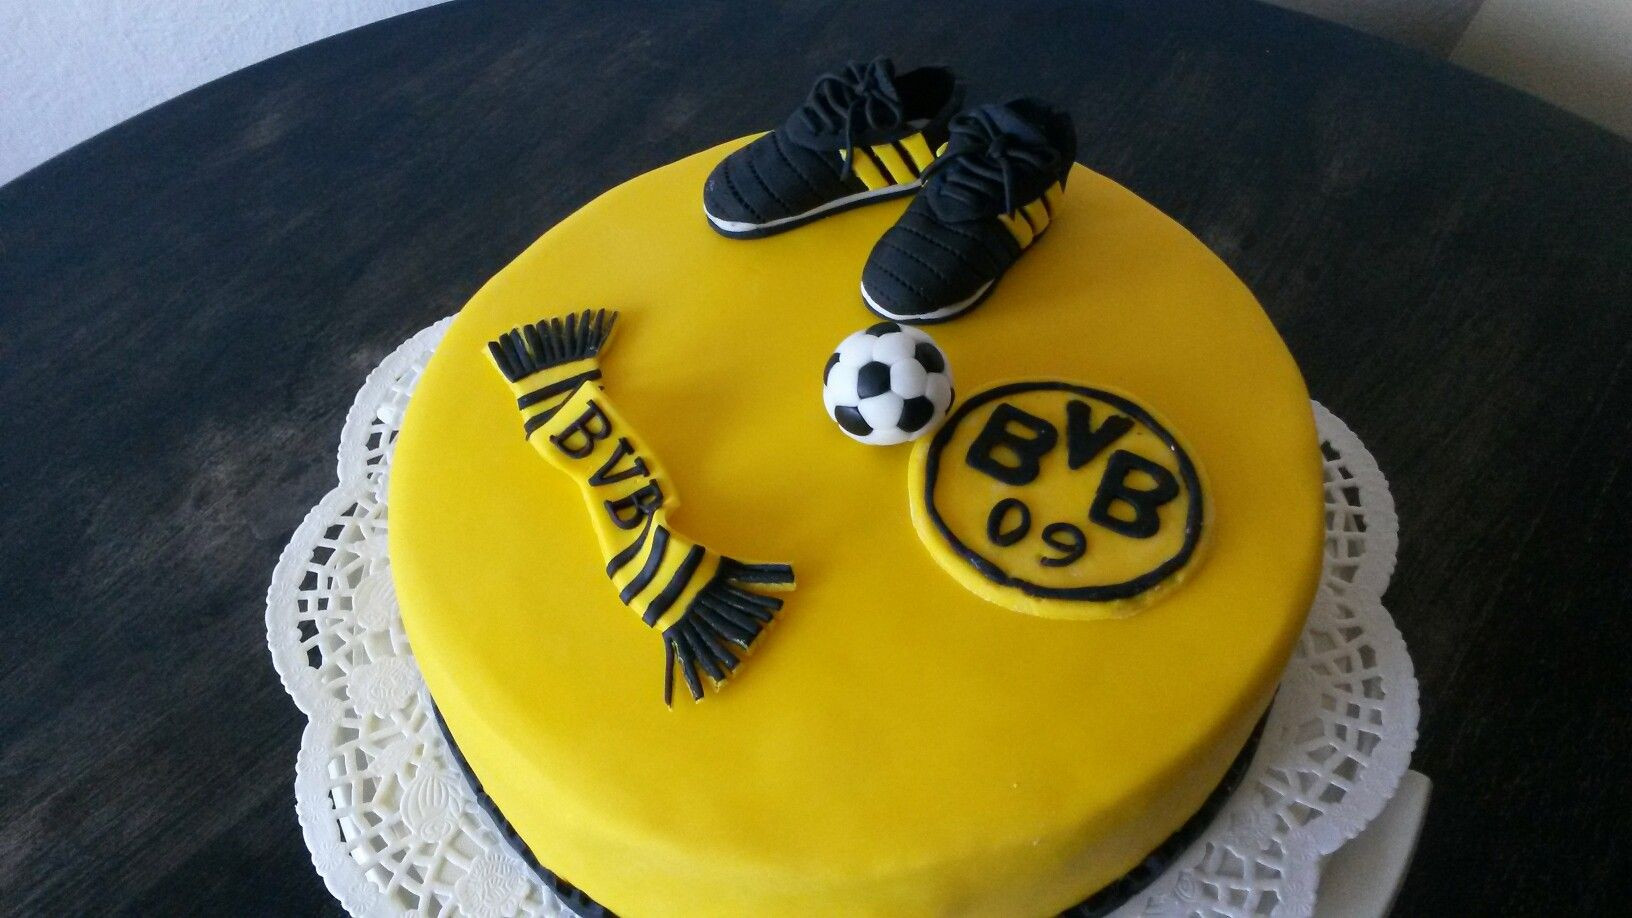 Bvb Geburtstagstorte
 BVB 09 Torte Dortmund Fußball Schuhe Fanschal